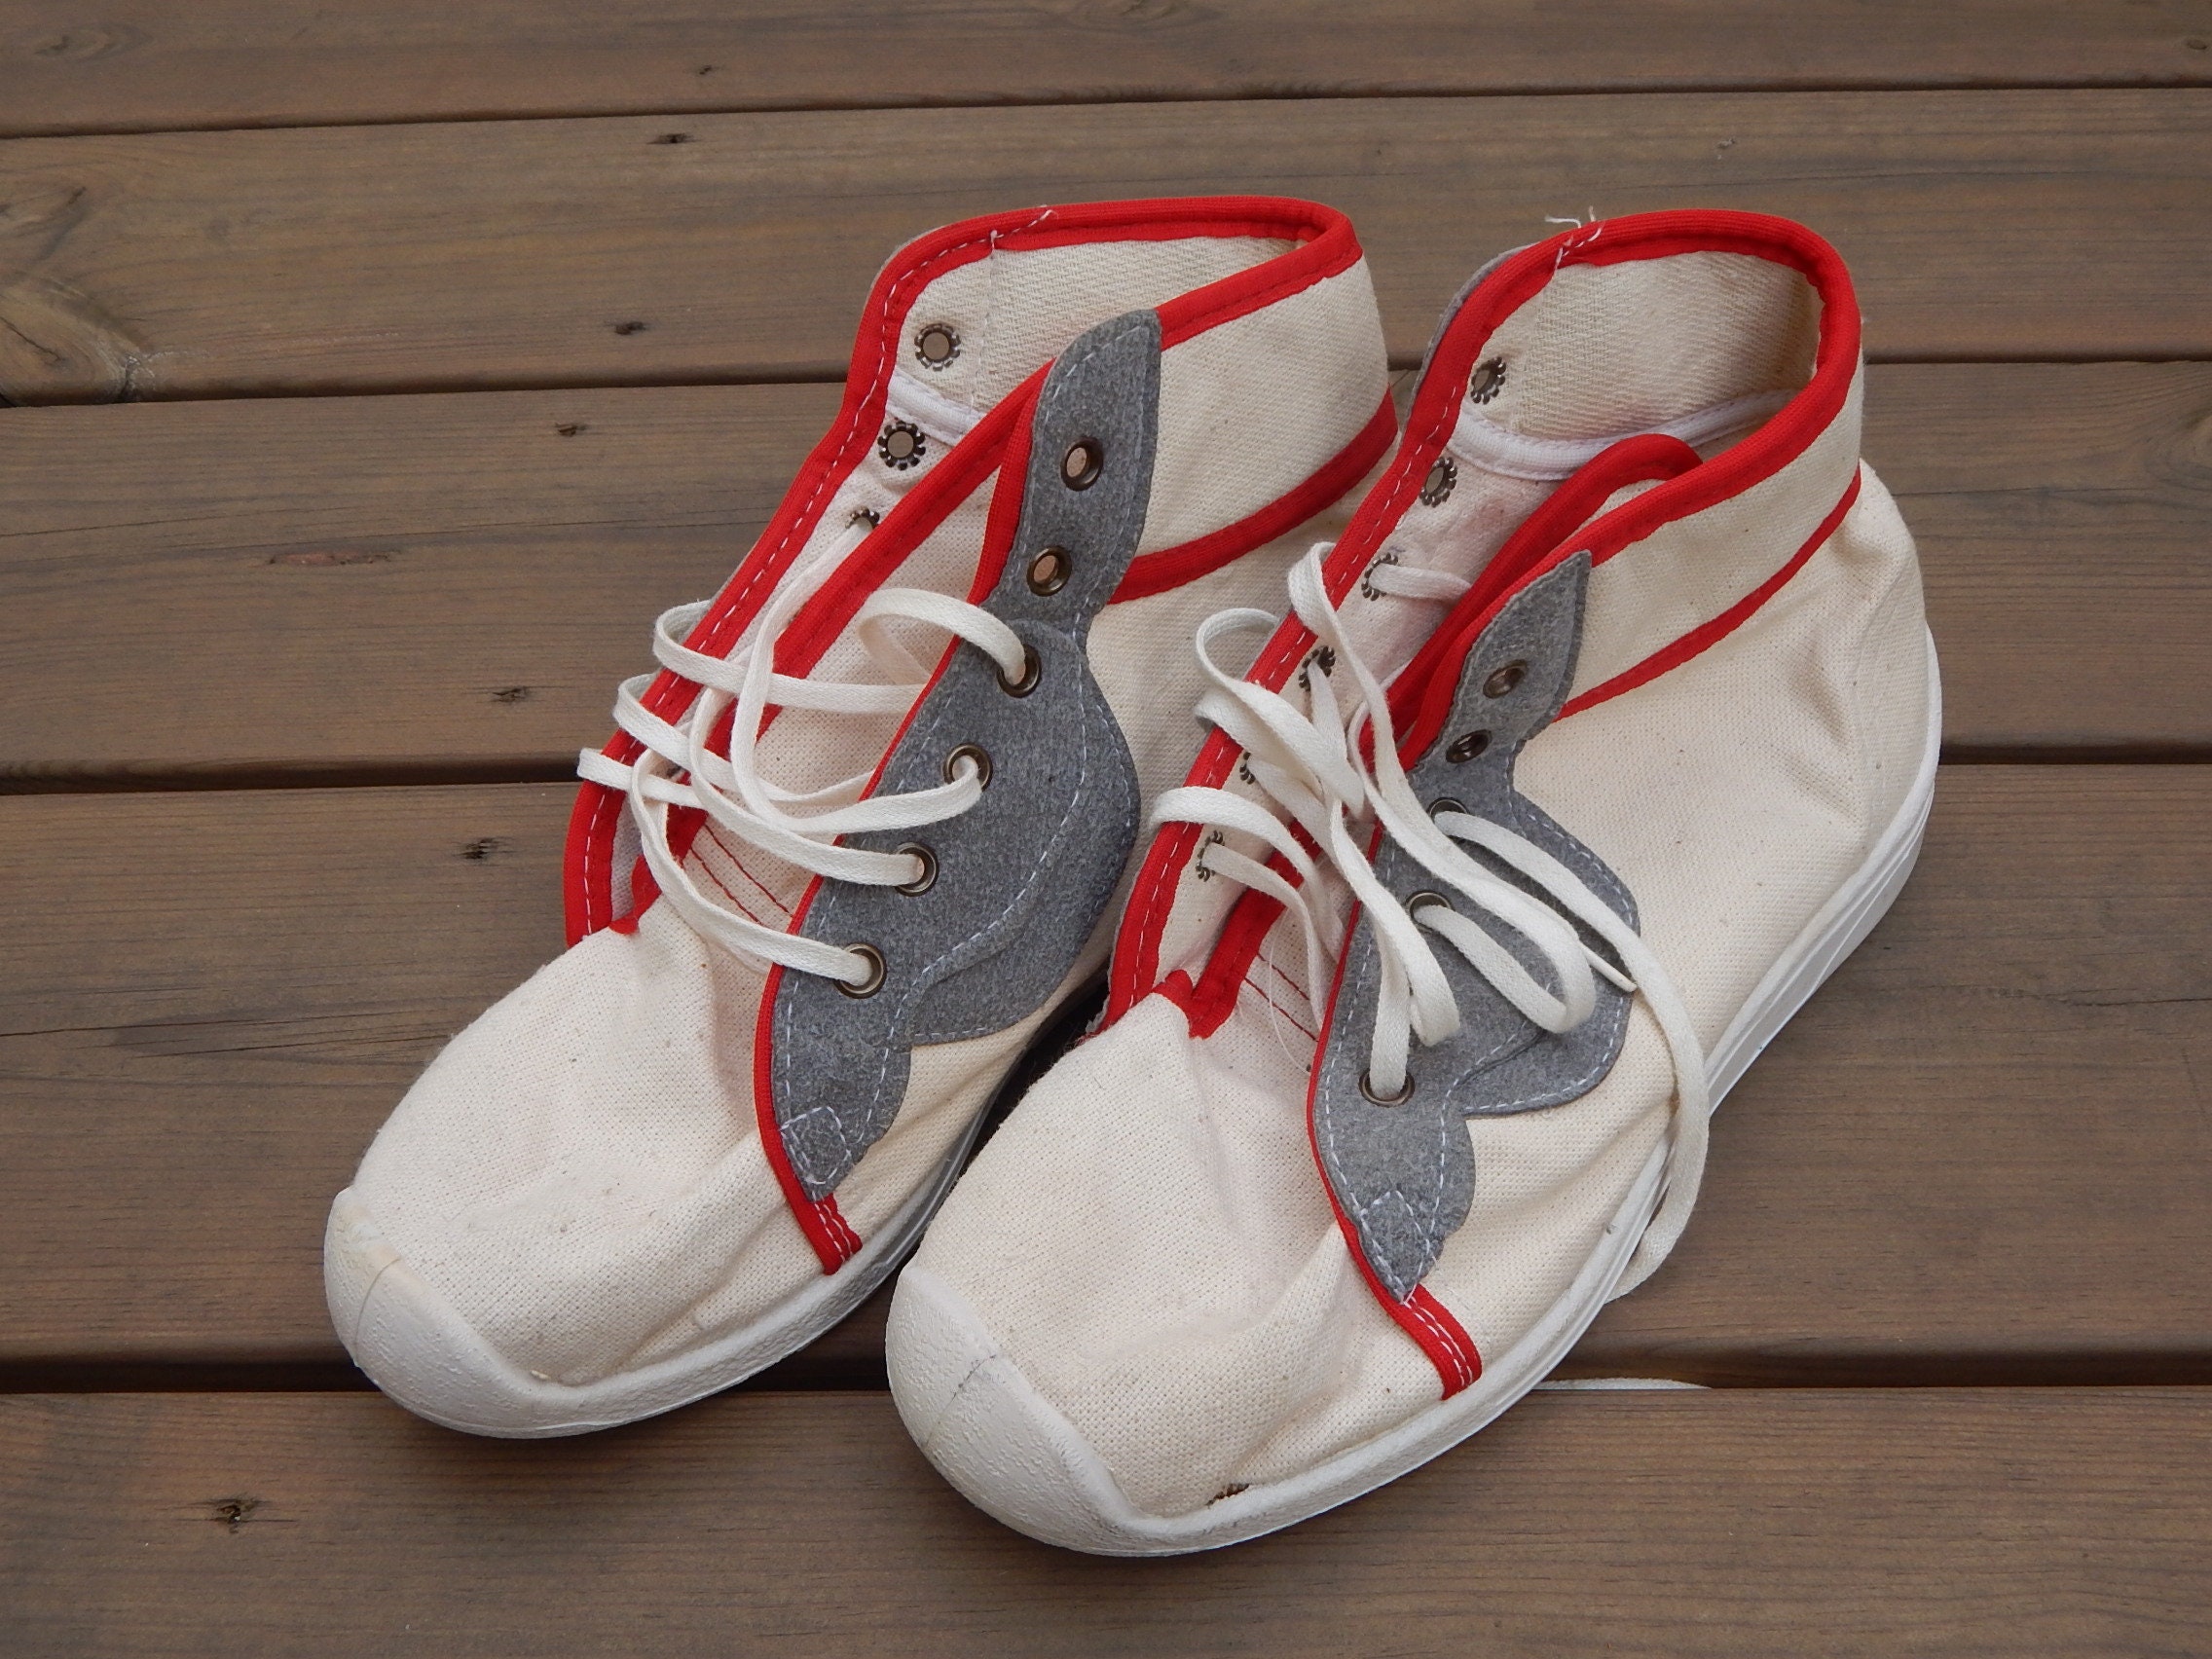 vintage Jungsters Sneakers Zapatos deportivos blancos Calzado retro sin usar era 1990-s Zapatillas de lona blanca de la Unión UE 38 Zapatos Zapatos para hombre Zapatillas y calzado deportivo Zapatillas con cordones 